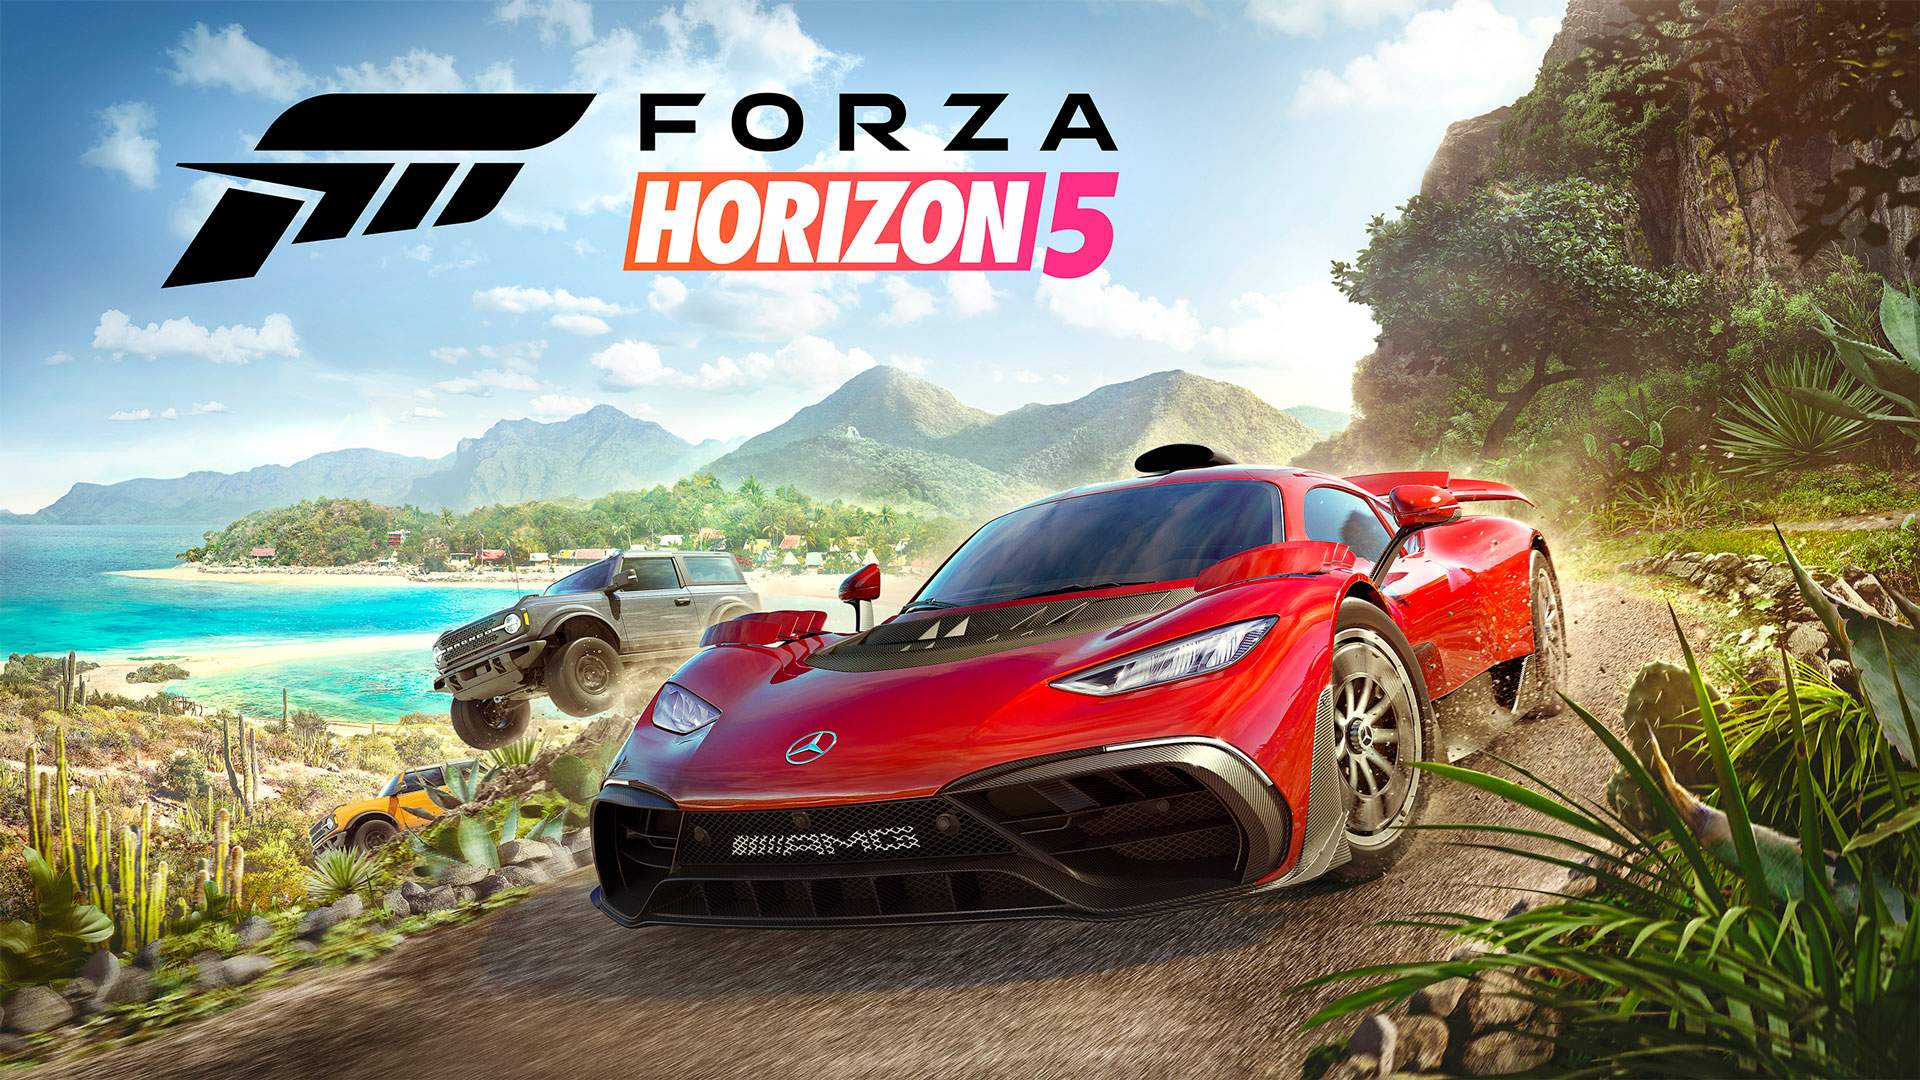 Ragazza ha hackerato Forza Horizon 5 prima del rilascio - gioco già su torrent